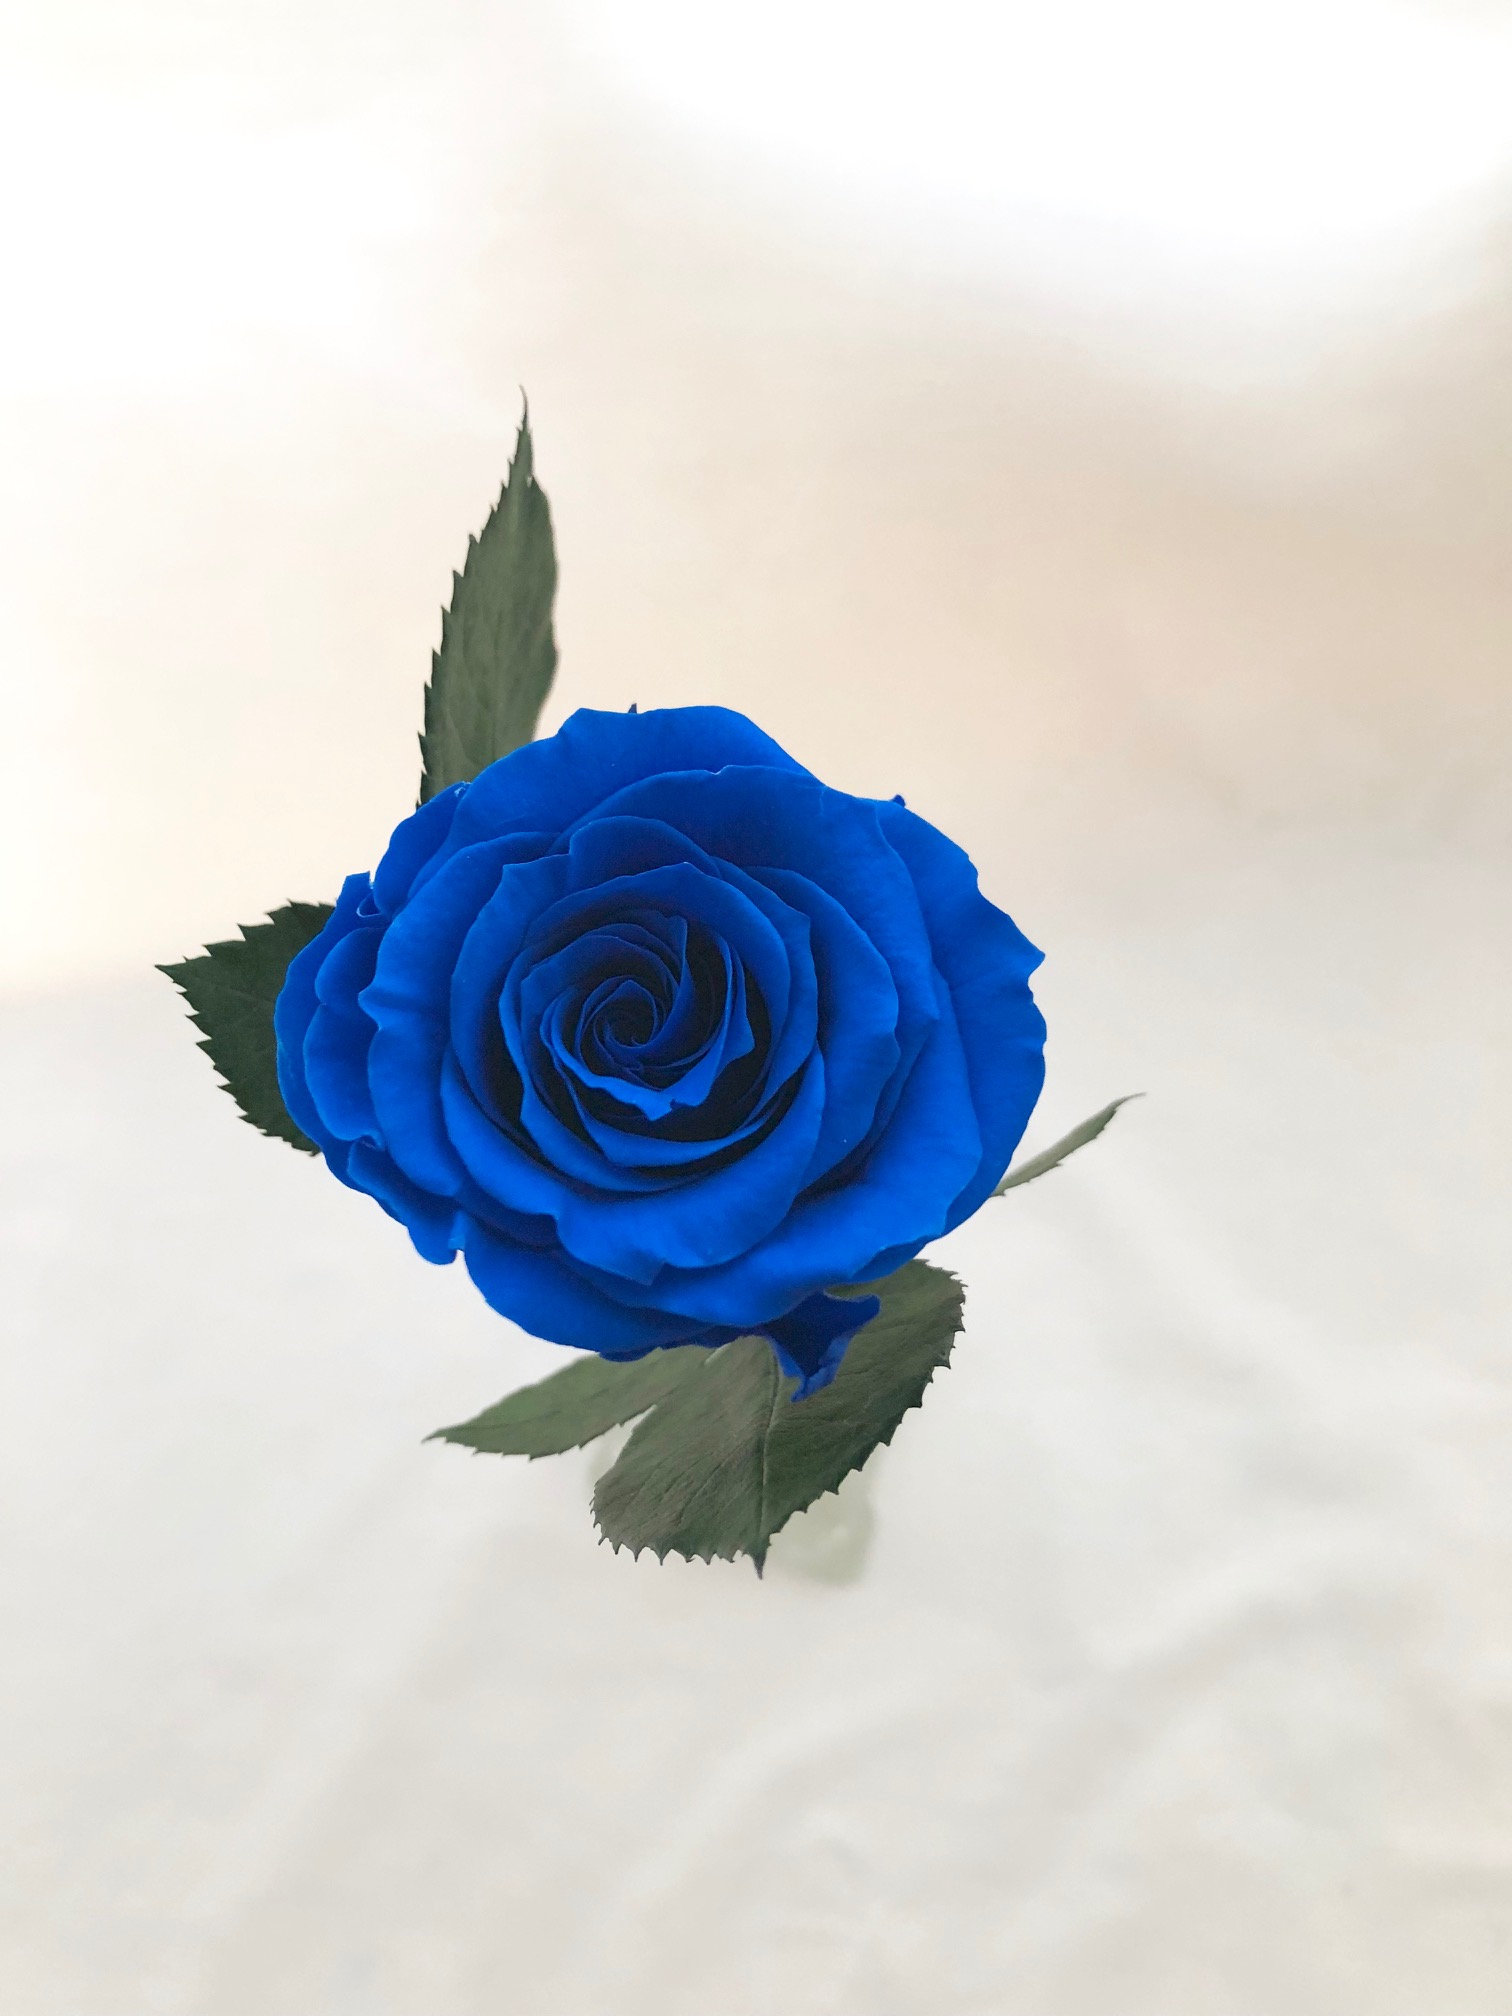 プリザーブドフラワー 青い薔薇の祝福一輪ラッピング Iichi ハンドメイド クラフト作品 手仕事品の通販